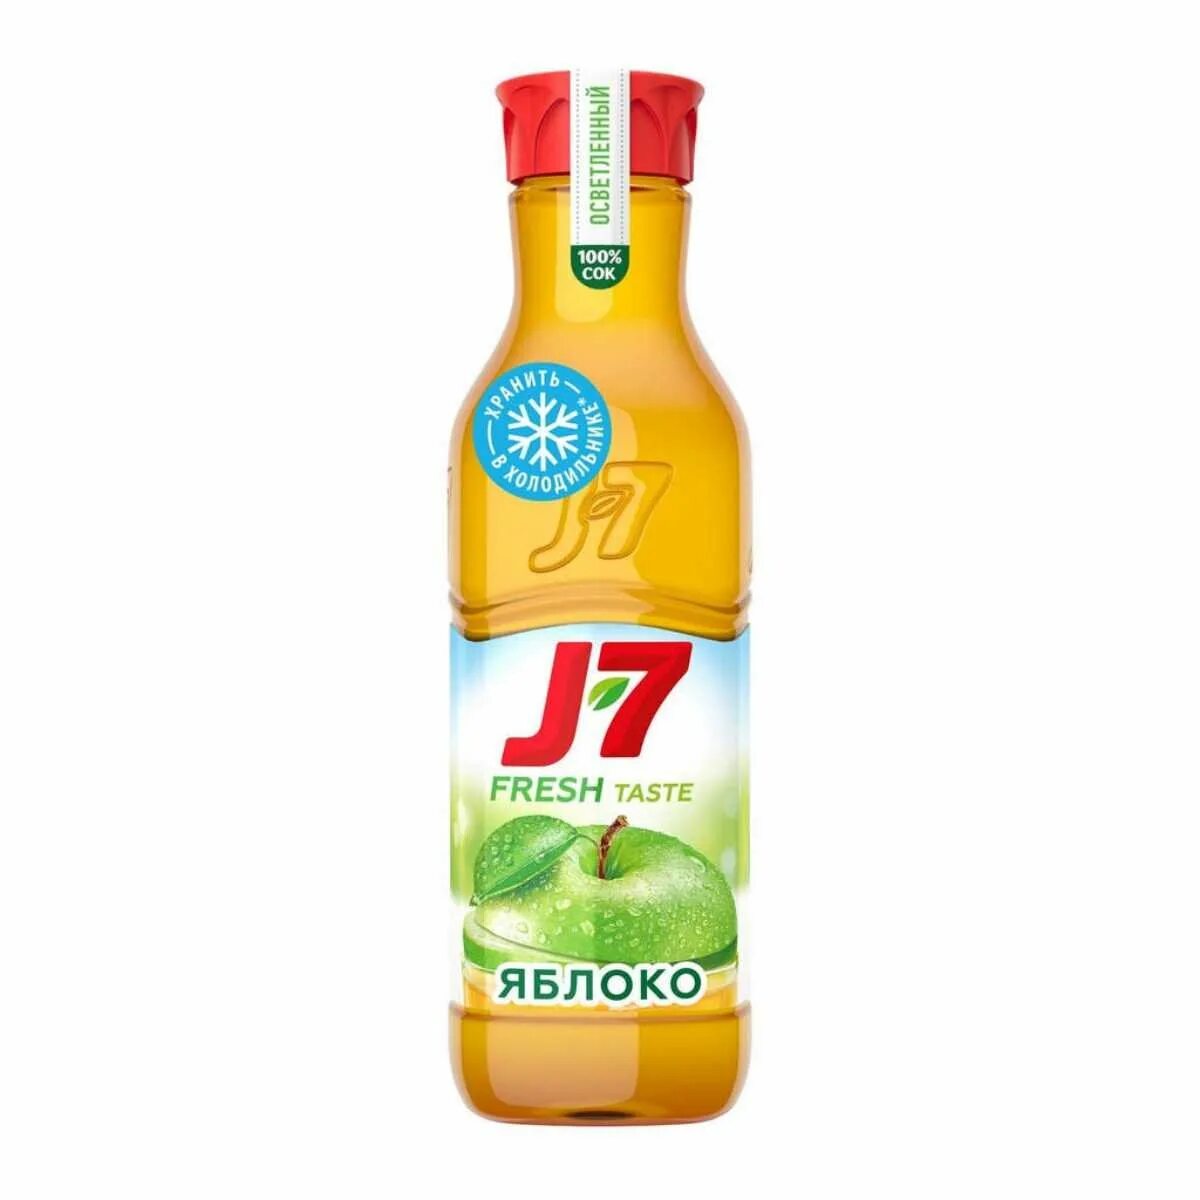 Яблоко 7 0 7 2. J7 Fresh taste апельсин. Сок Джей Севен 0.3 яблоко. J7 сок Фреш. Сок j7 Fresh taste апельсин.